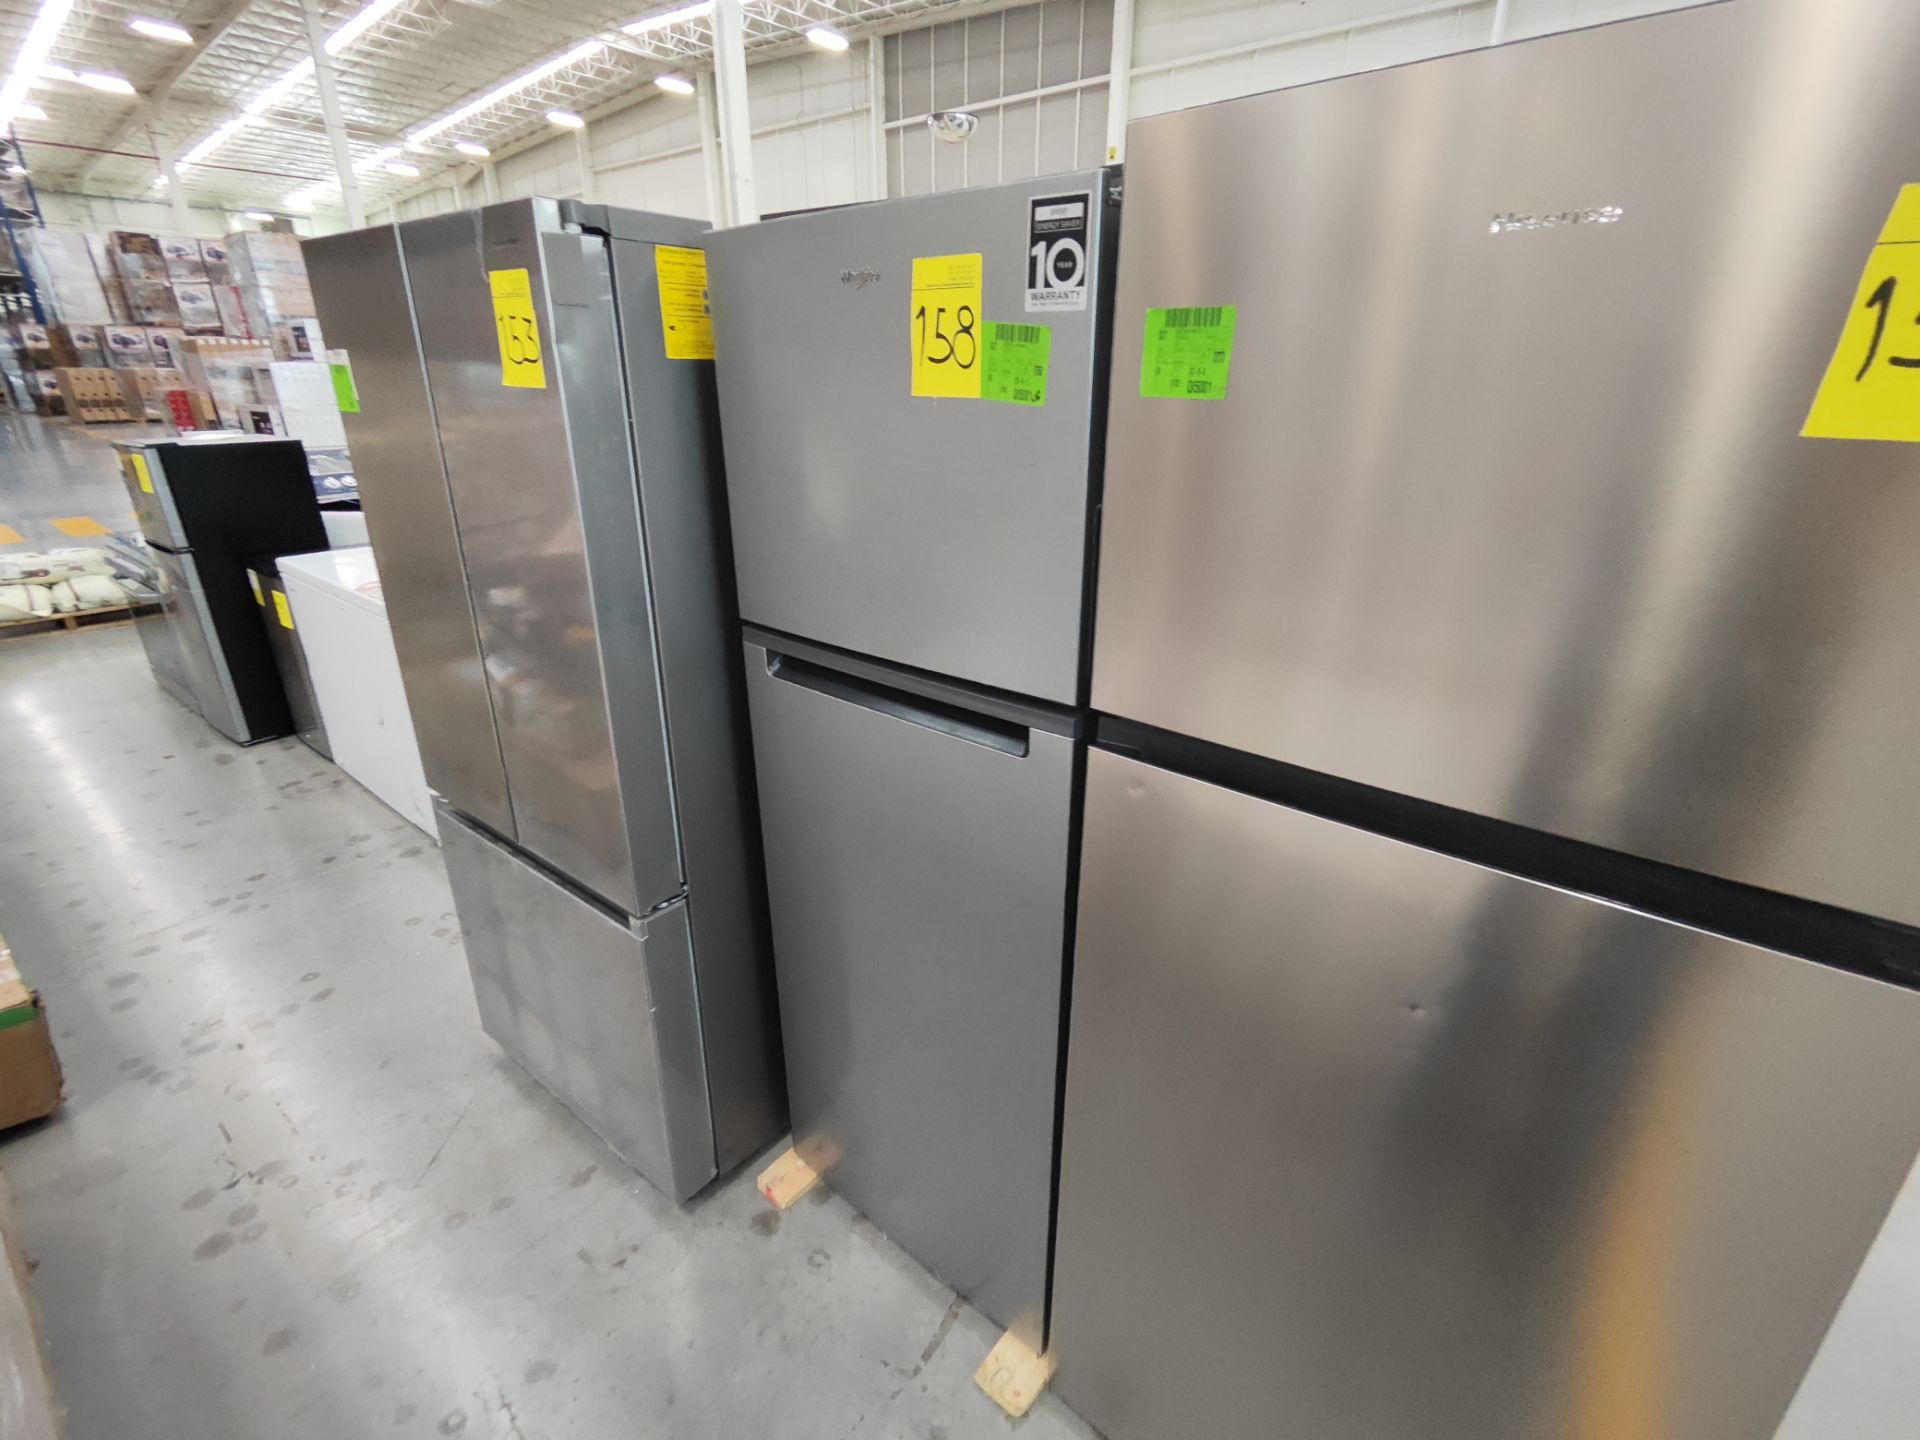 Lote de 1 Refrigerador Marca WHIRPOOL, Modelo WT1130M, Color GRIS (No se asegura su funcionamie - Image 2 of 4